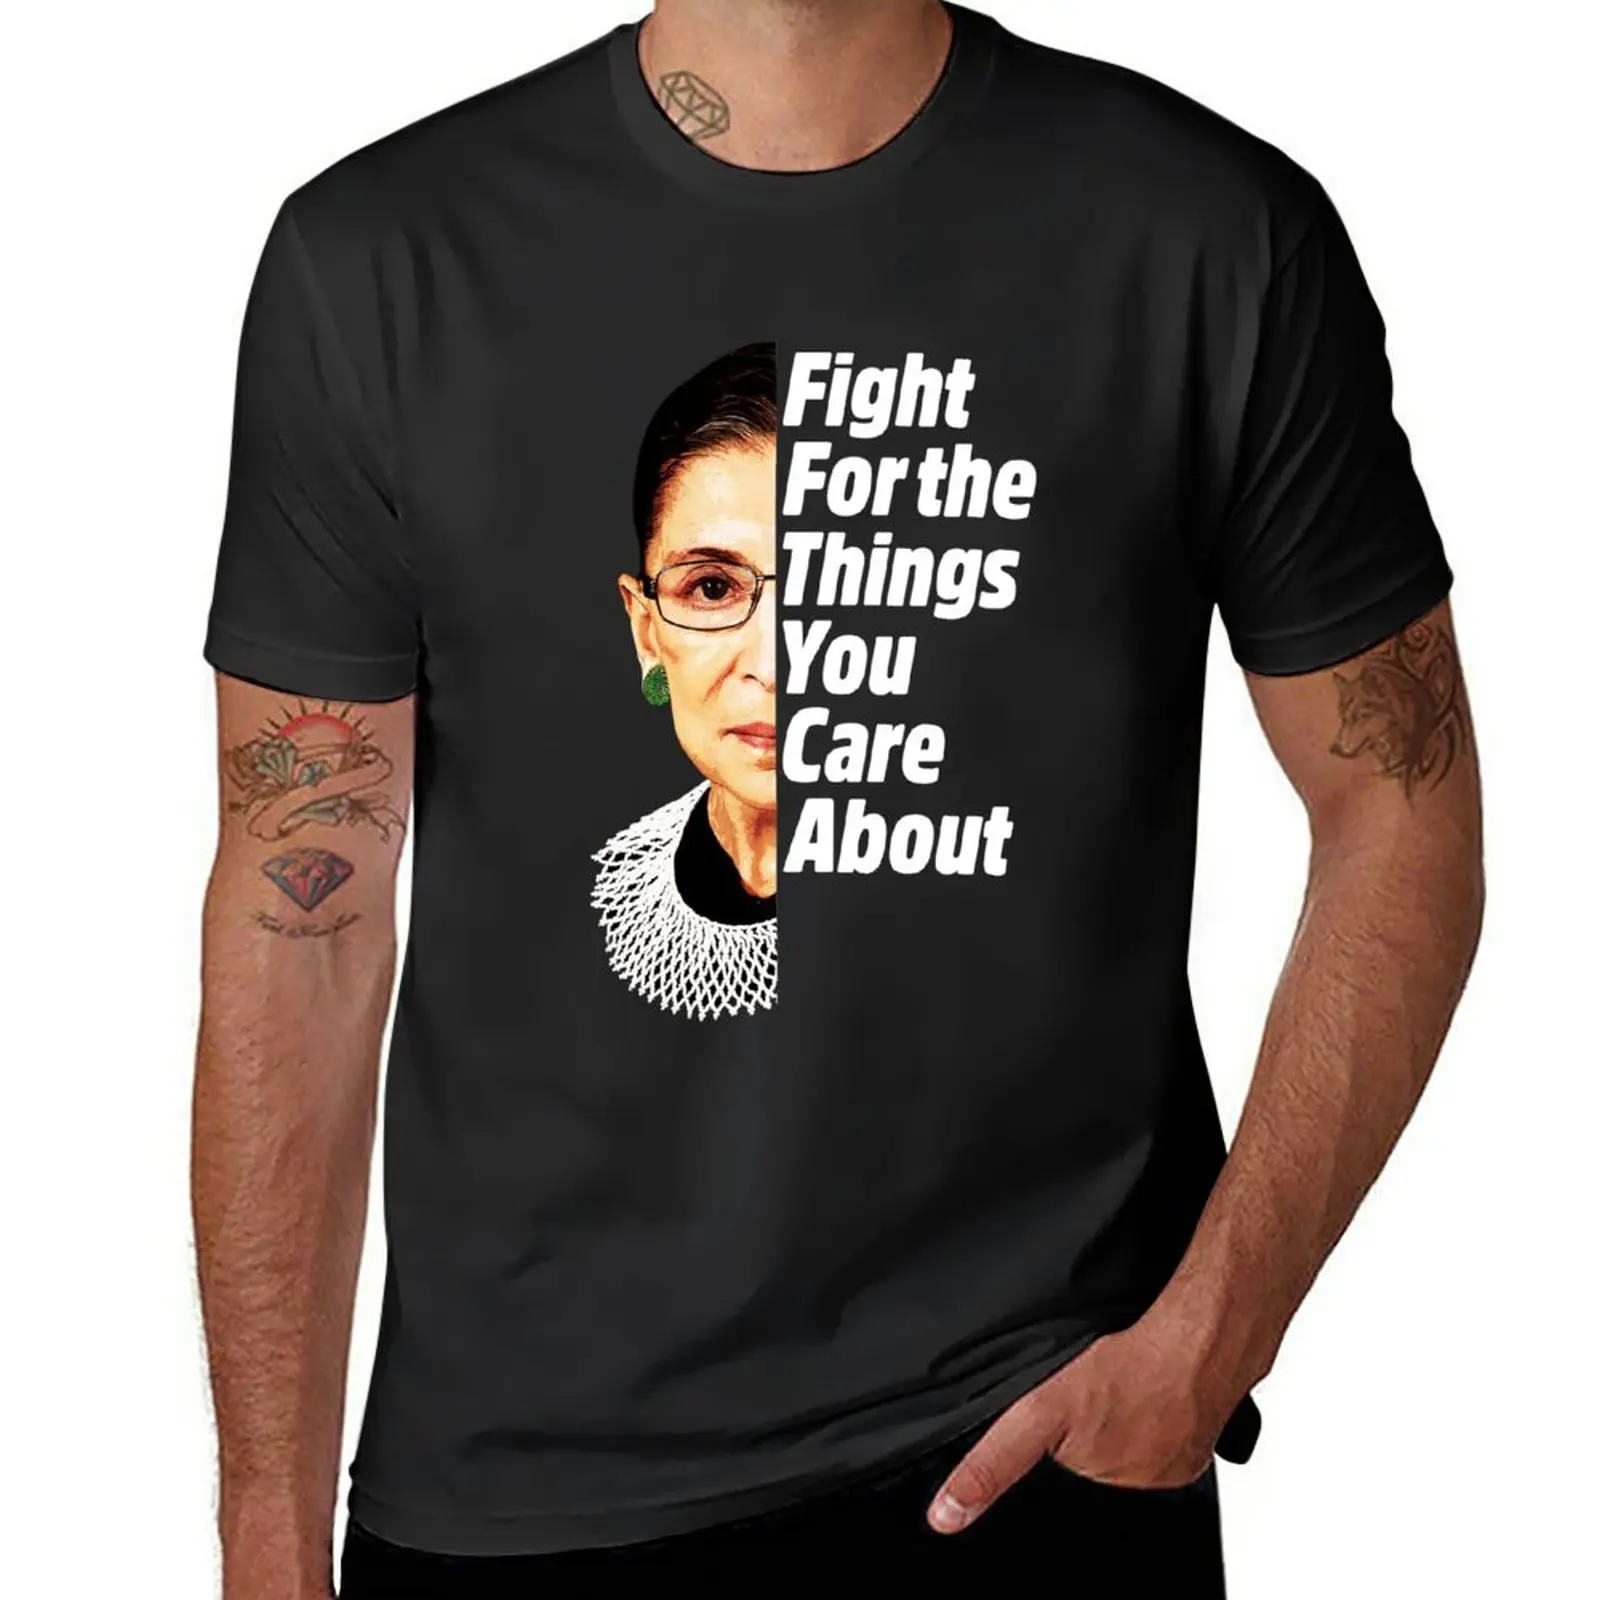 Новая футболка RBG Ruth Bader Ginsburg Fight For The Things You Care About, футболки больших размеров, забавные футболки для мужчин 0